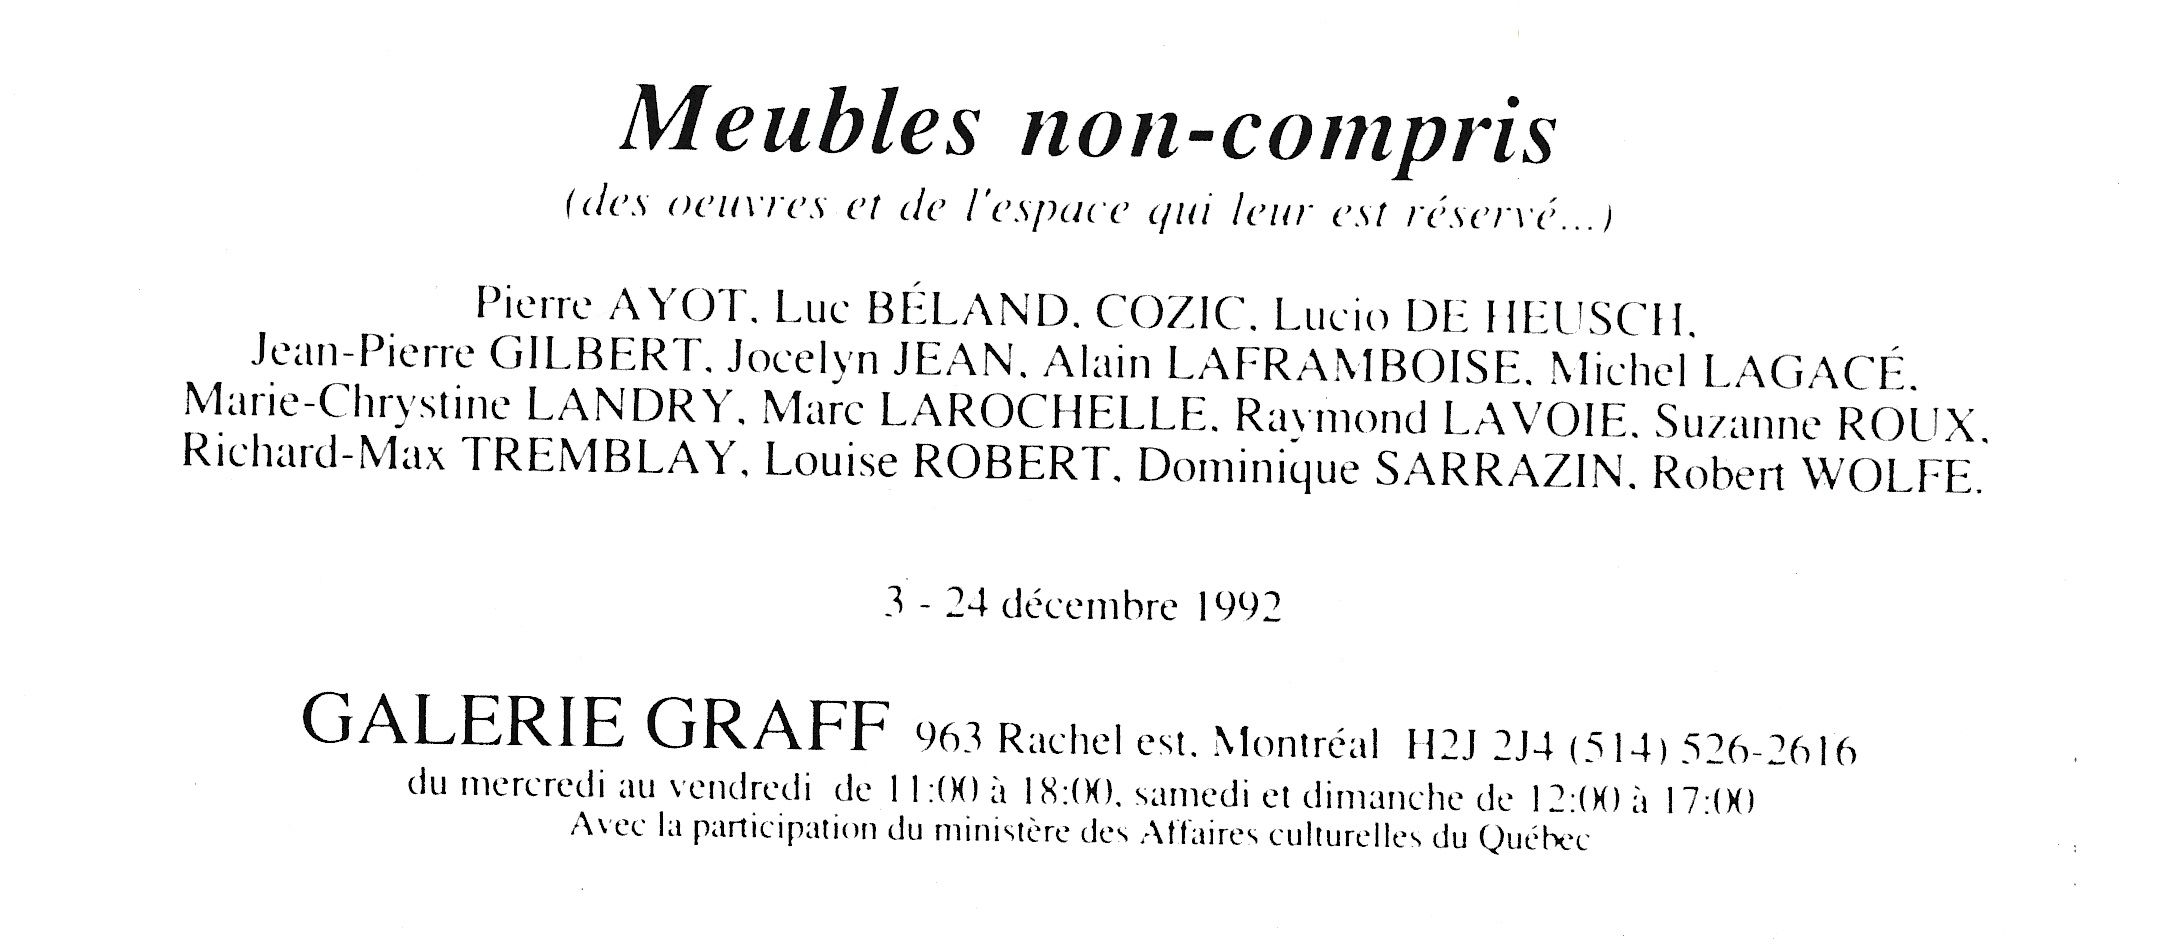 Carton d’invitation de l’exposition Meubles non-compris, Galerie Graff, Montréal, 1992.